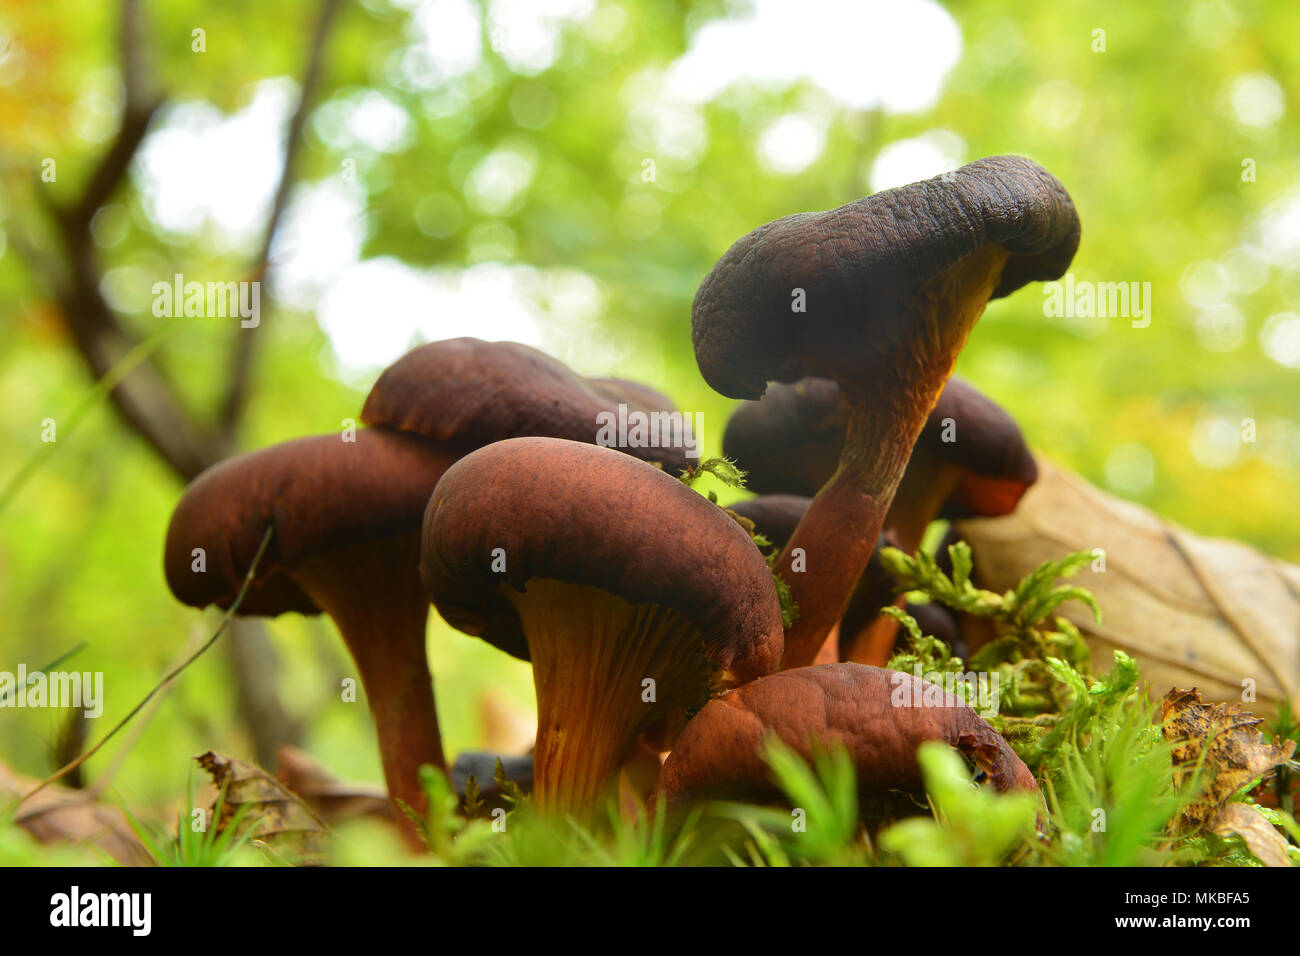 Omphalotus olearius champignons dans la forêt, peut être mortel Banque D'Images